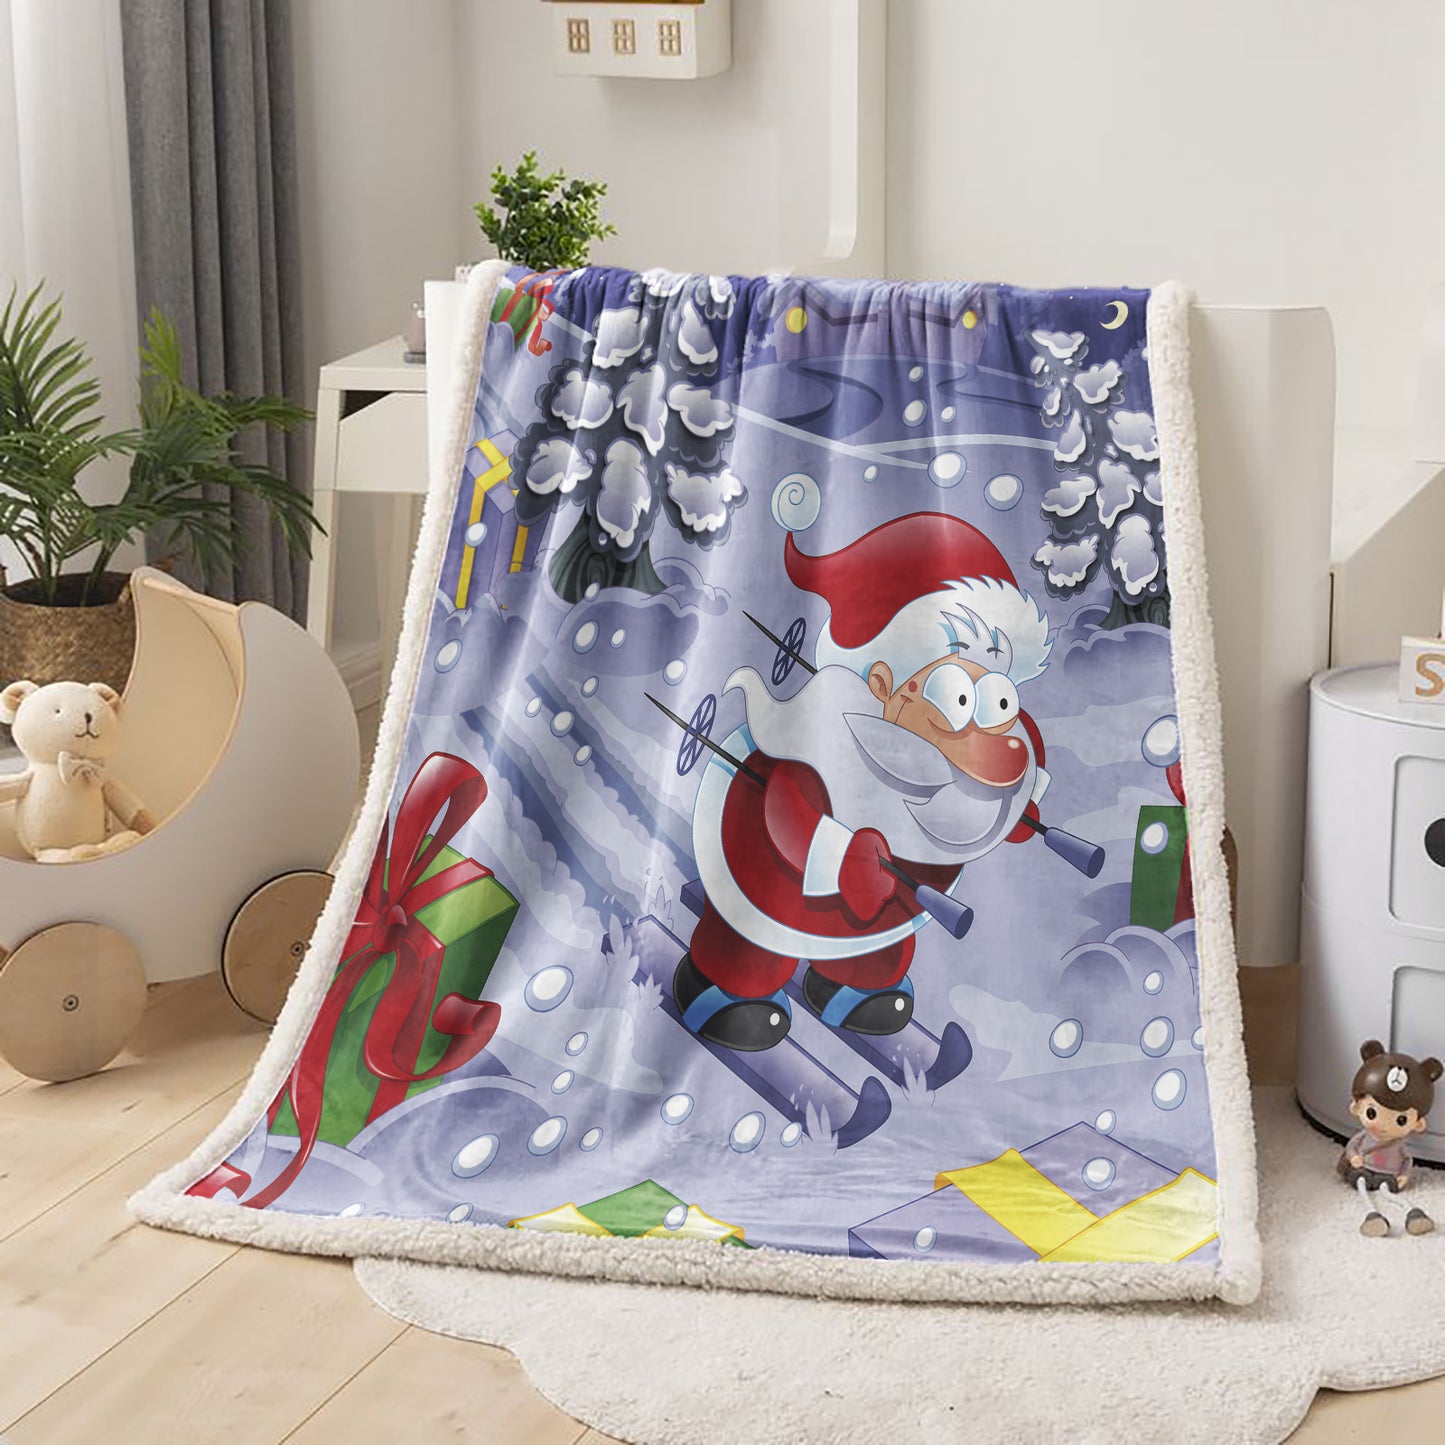 WONGS BEDDING Santa Claus Skiing Blanket